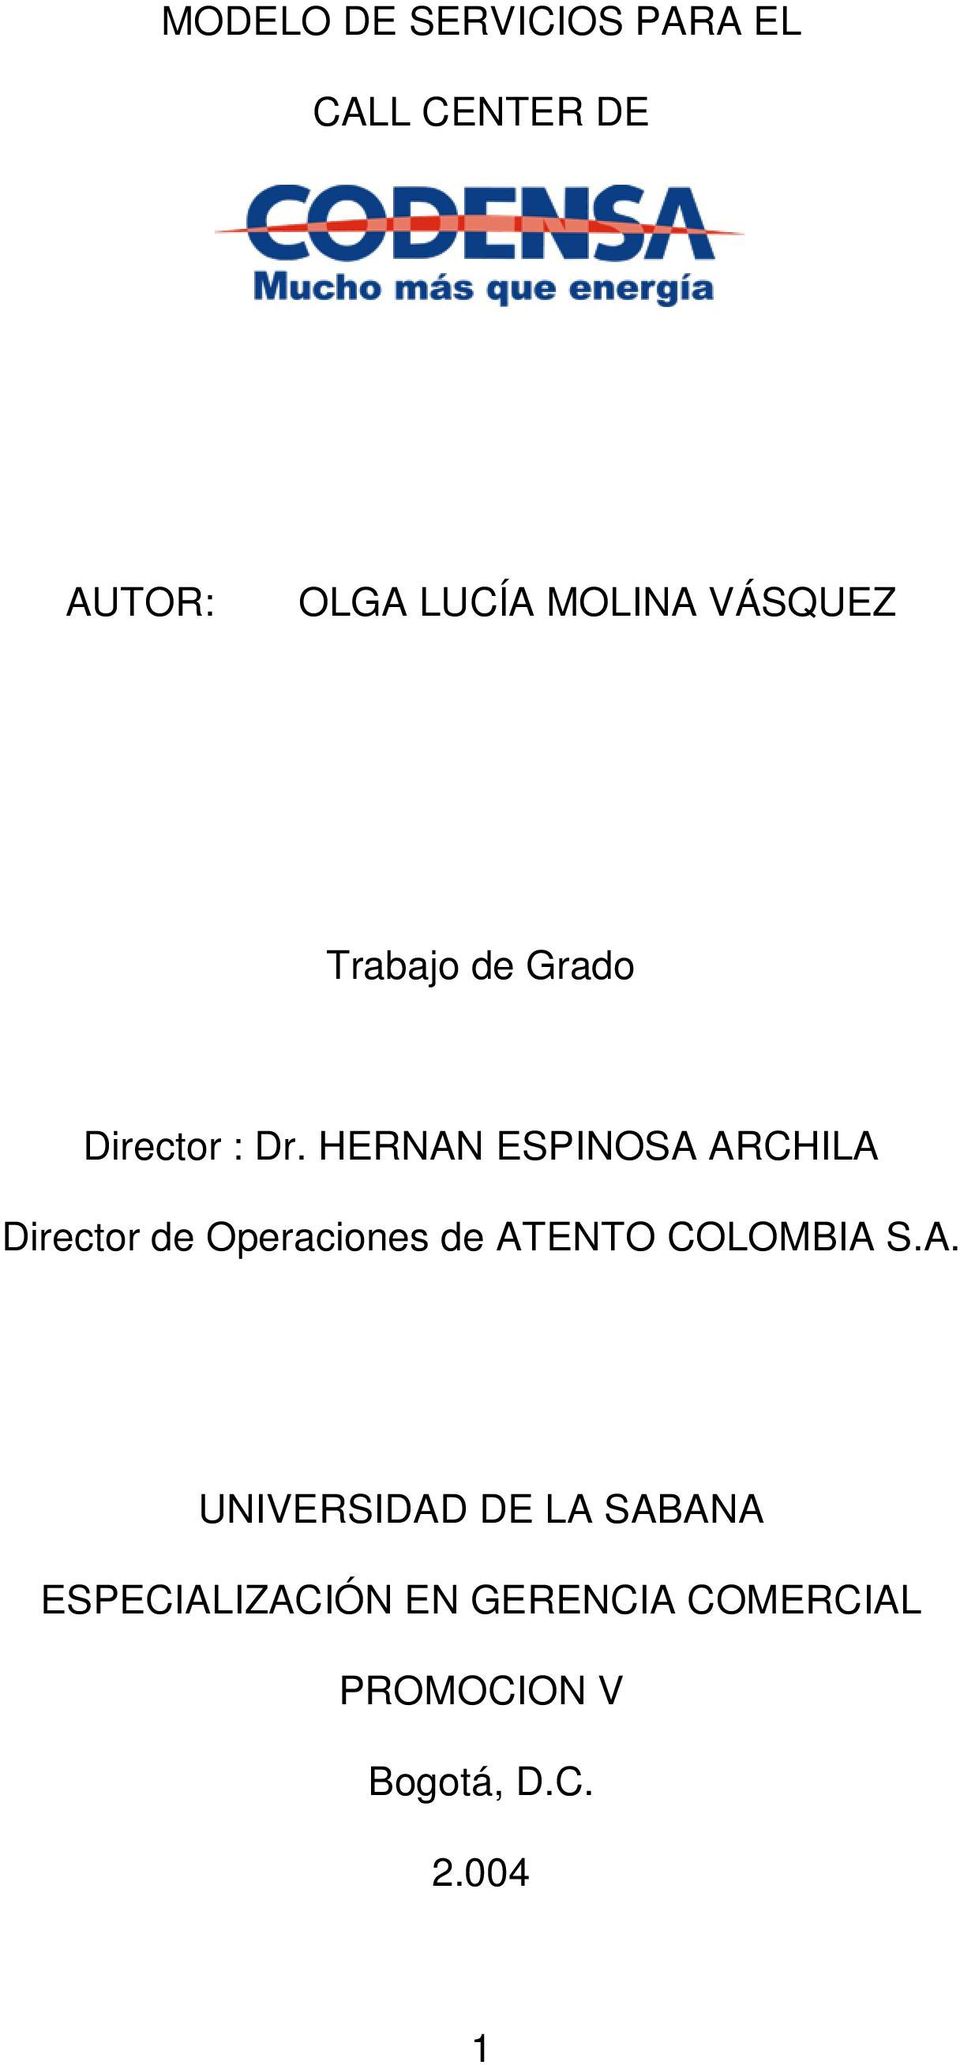 HERNAN ESPINOSA ARCHILA Director de Operaciones de ATENTO COLOMBIA S.